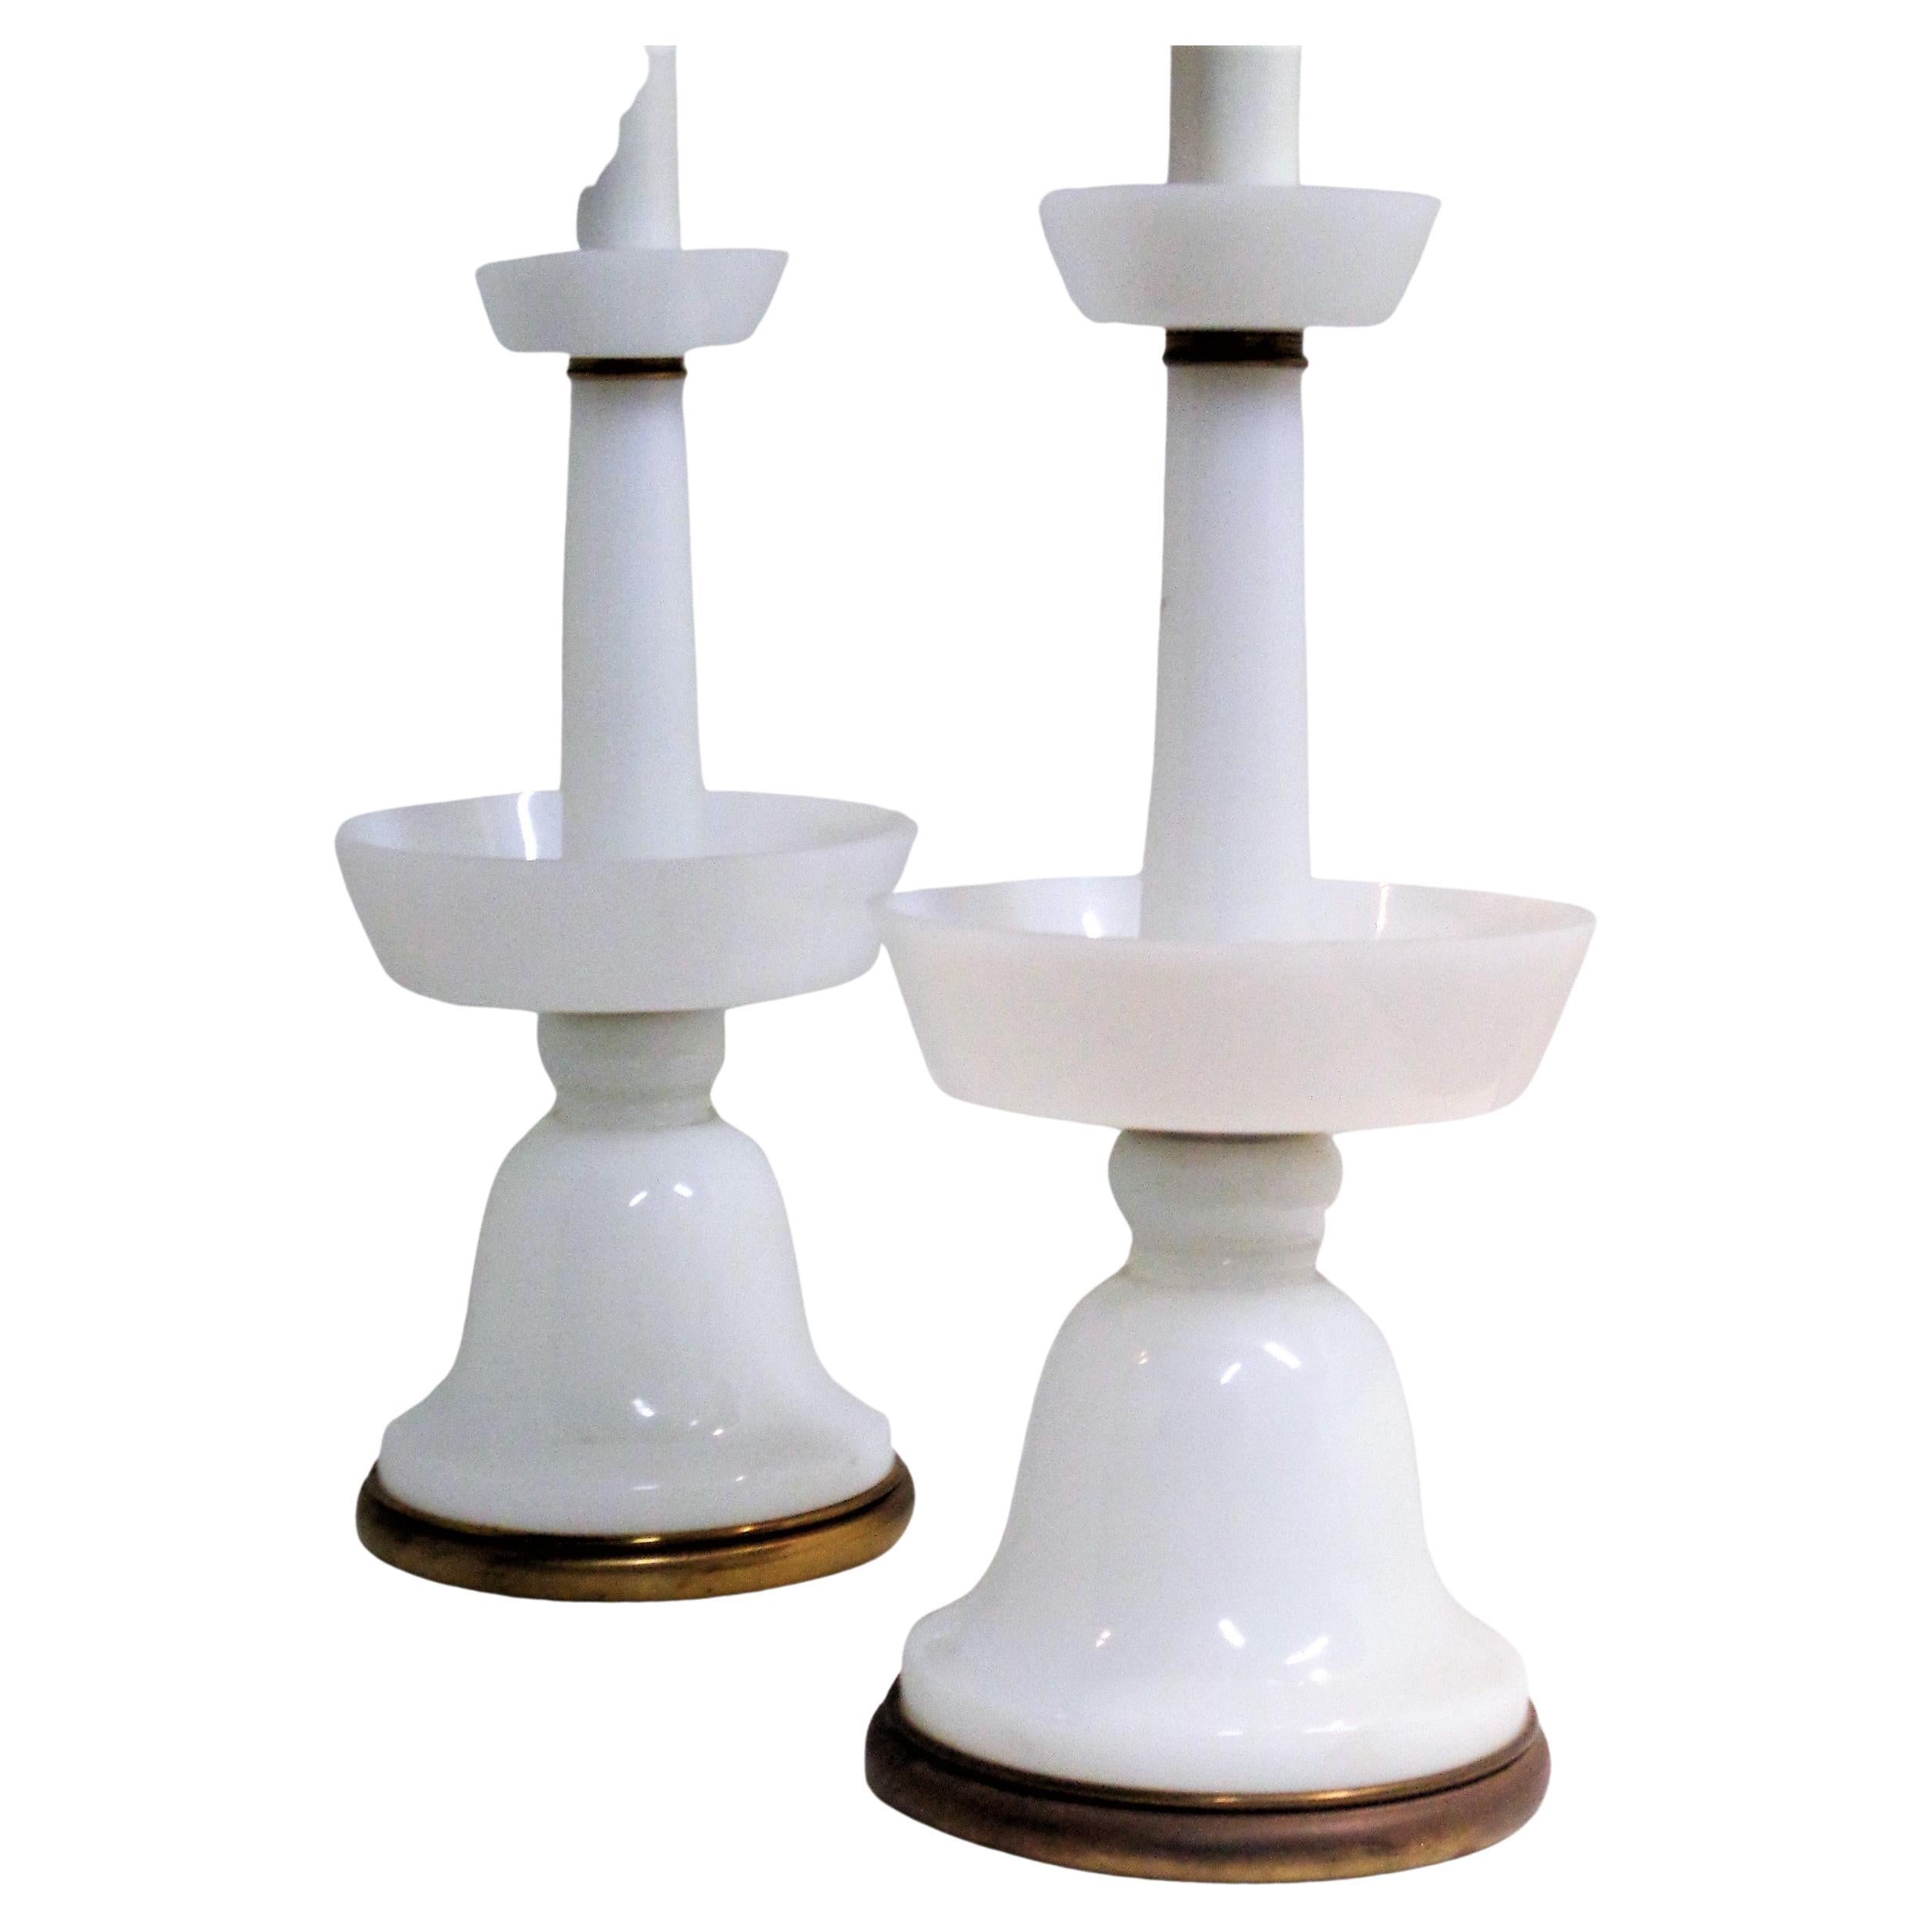 Lampes de table en forme de fontaine en verre opalin blanc, avec ferrures en laiton et tiges supérieures en métal émaillé blanc. État vintage d'origine. Circa 1930. 38